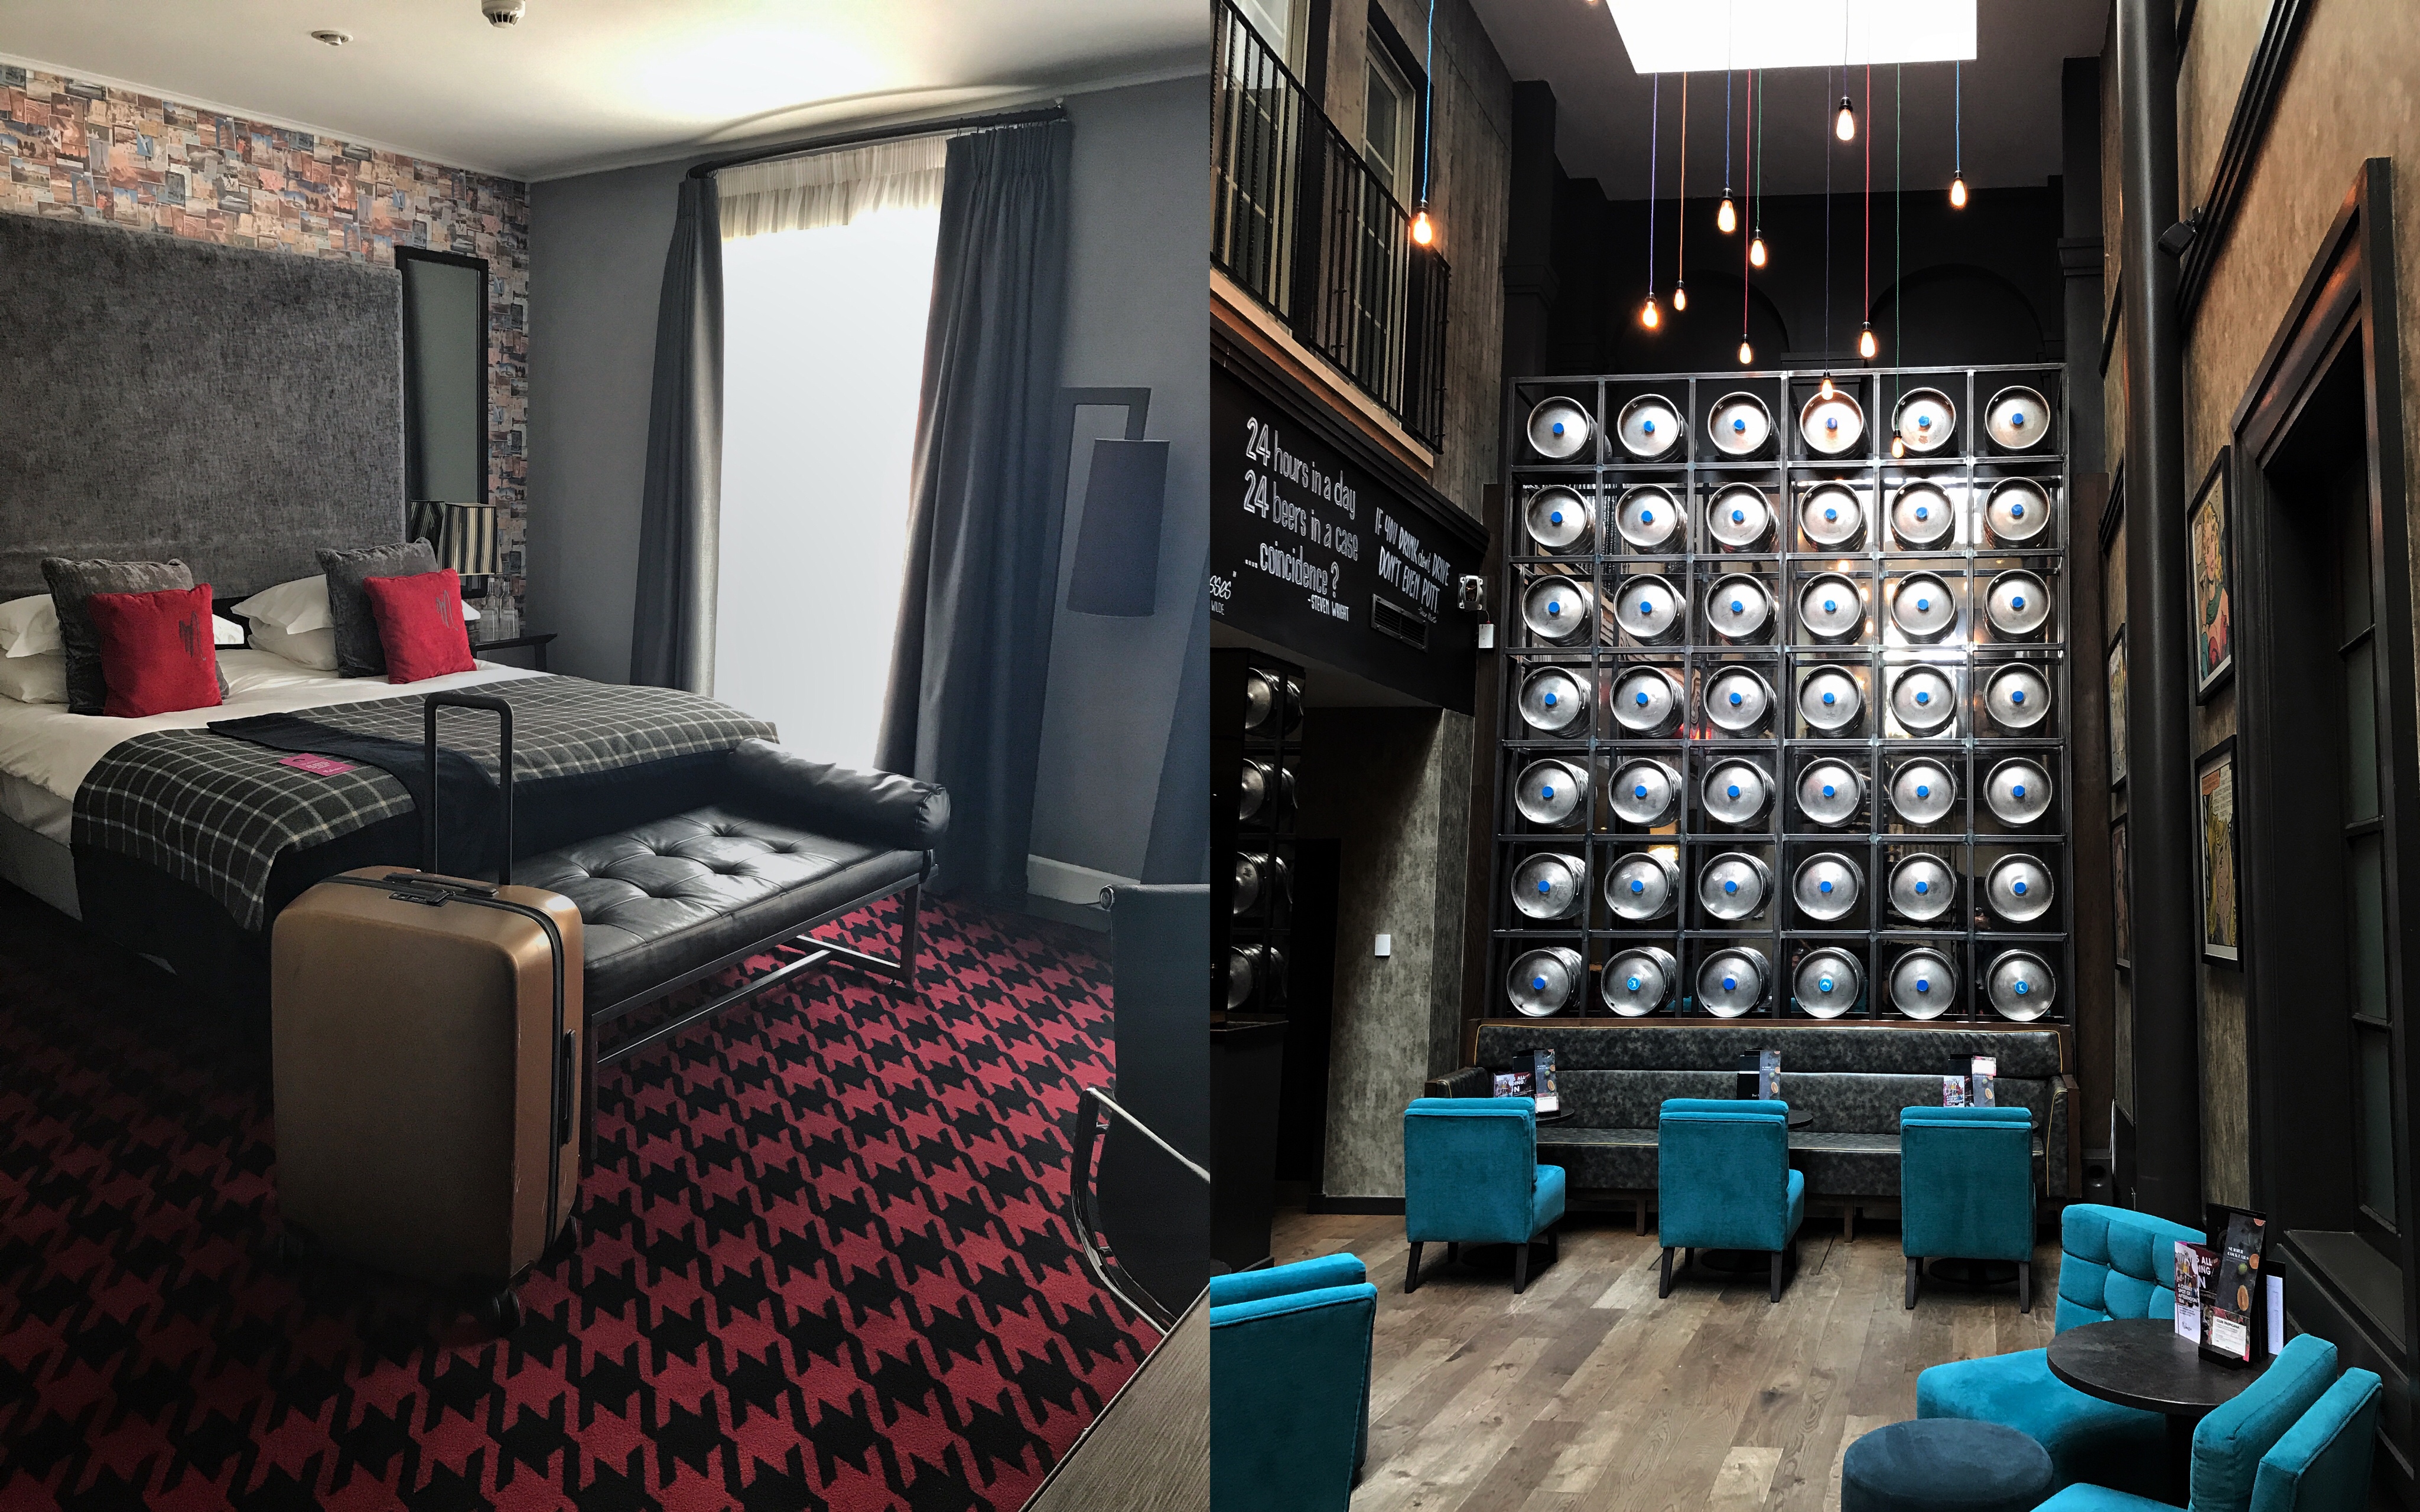 malmaison hotel glasgow instagram pic visit scotland blogger